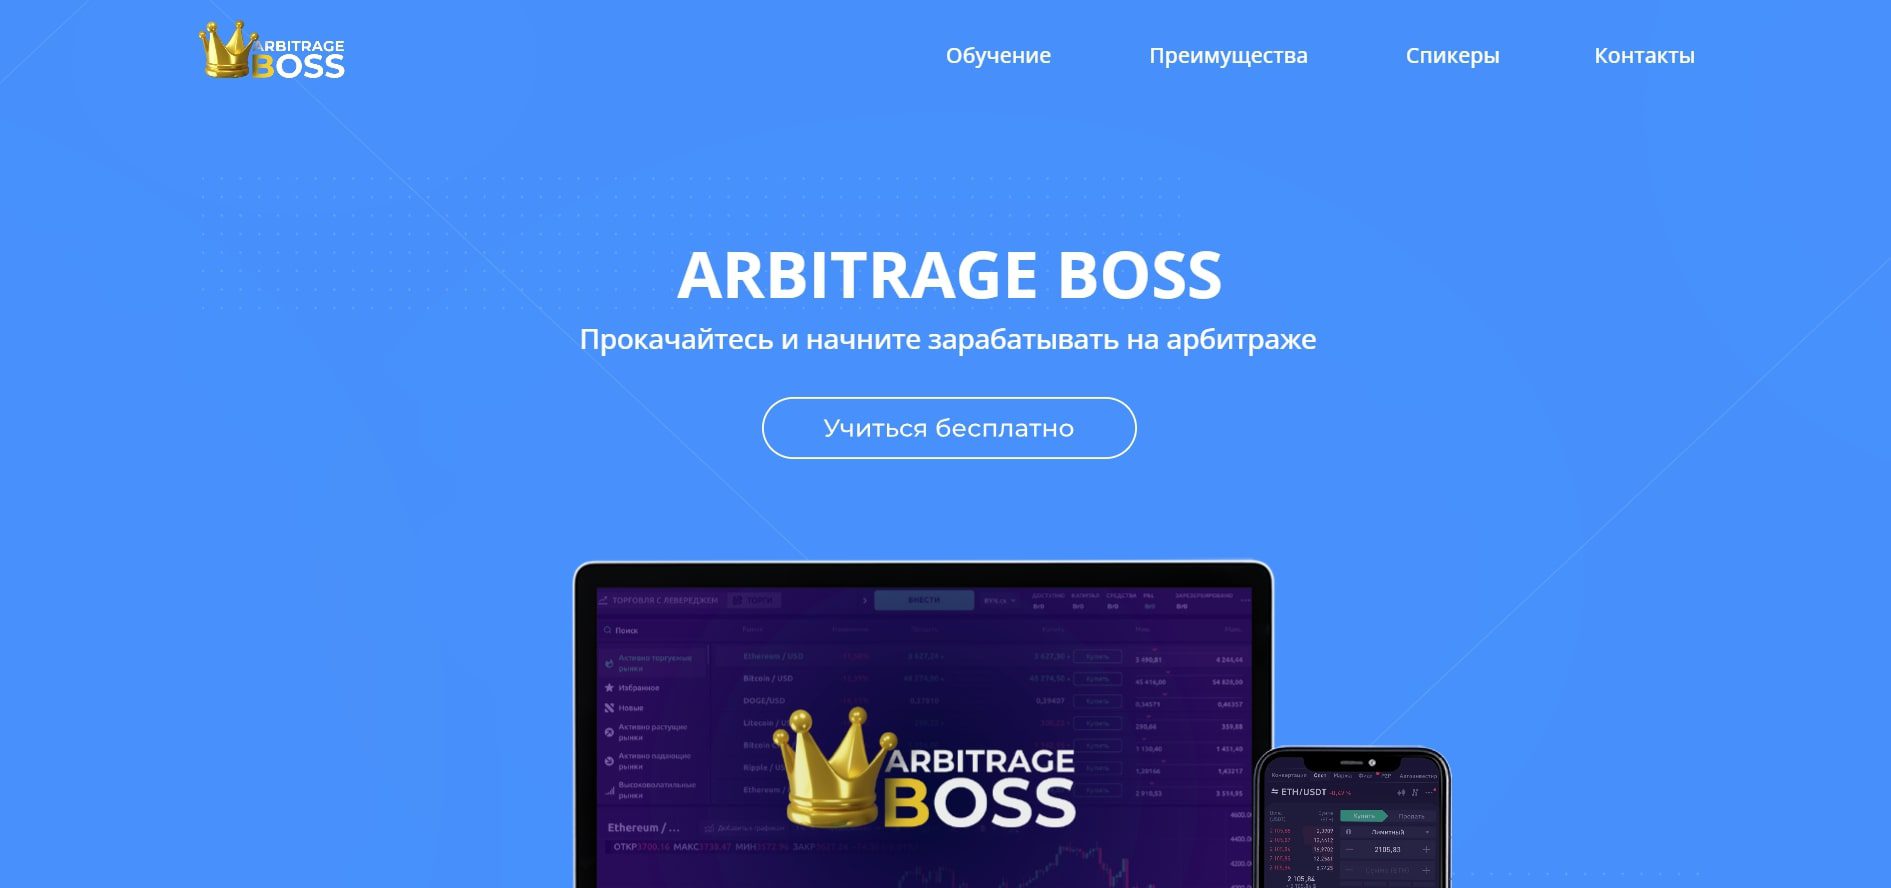 Сайт Arbitrage Boss.ru